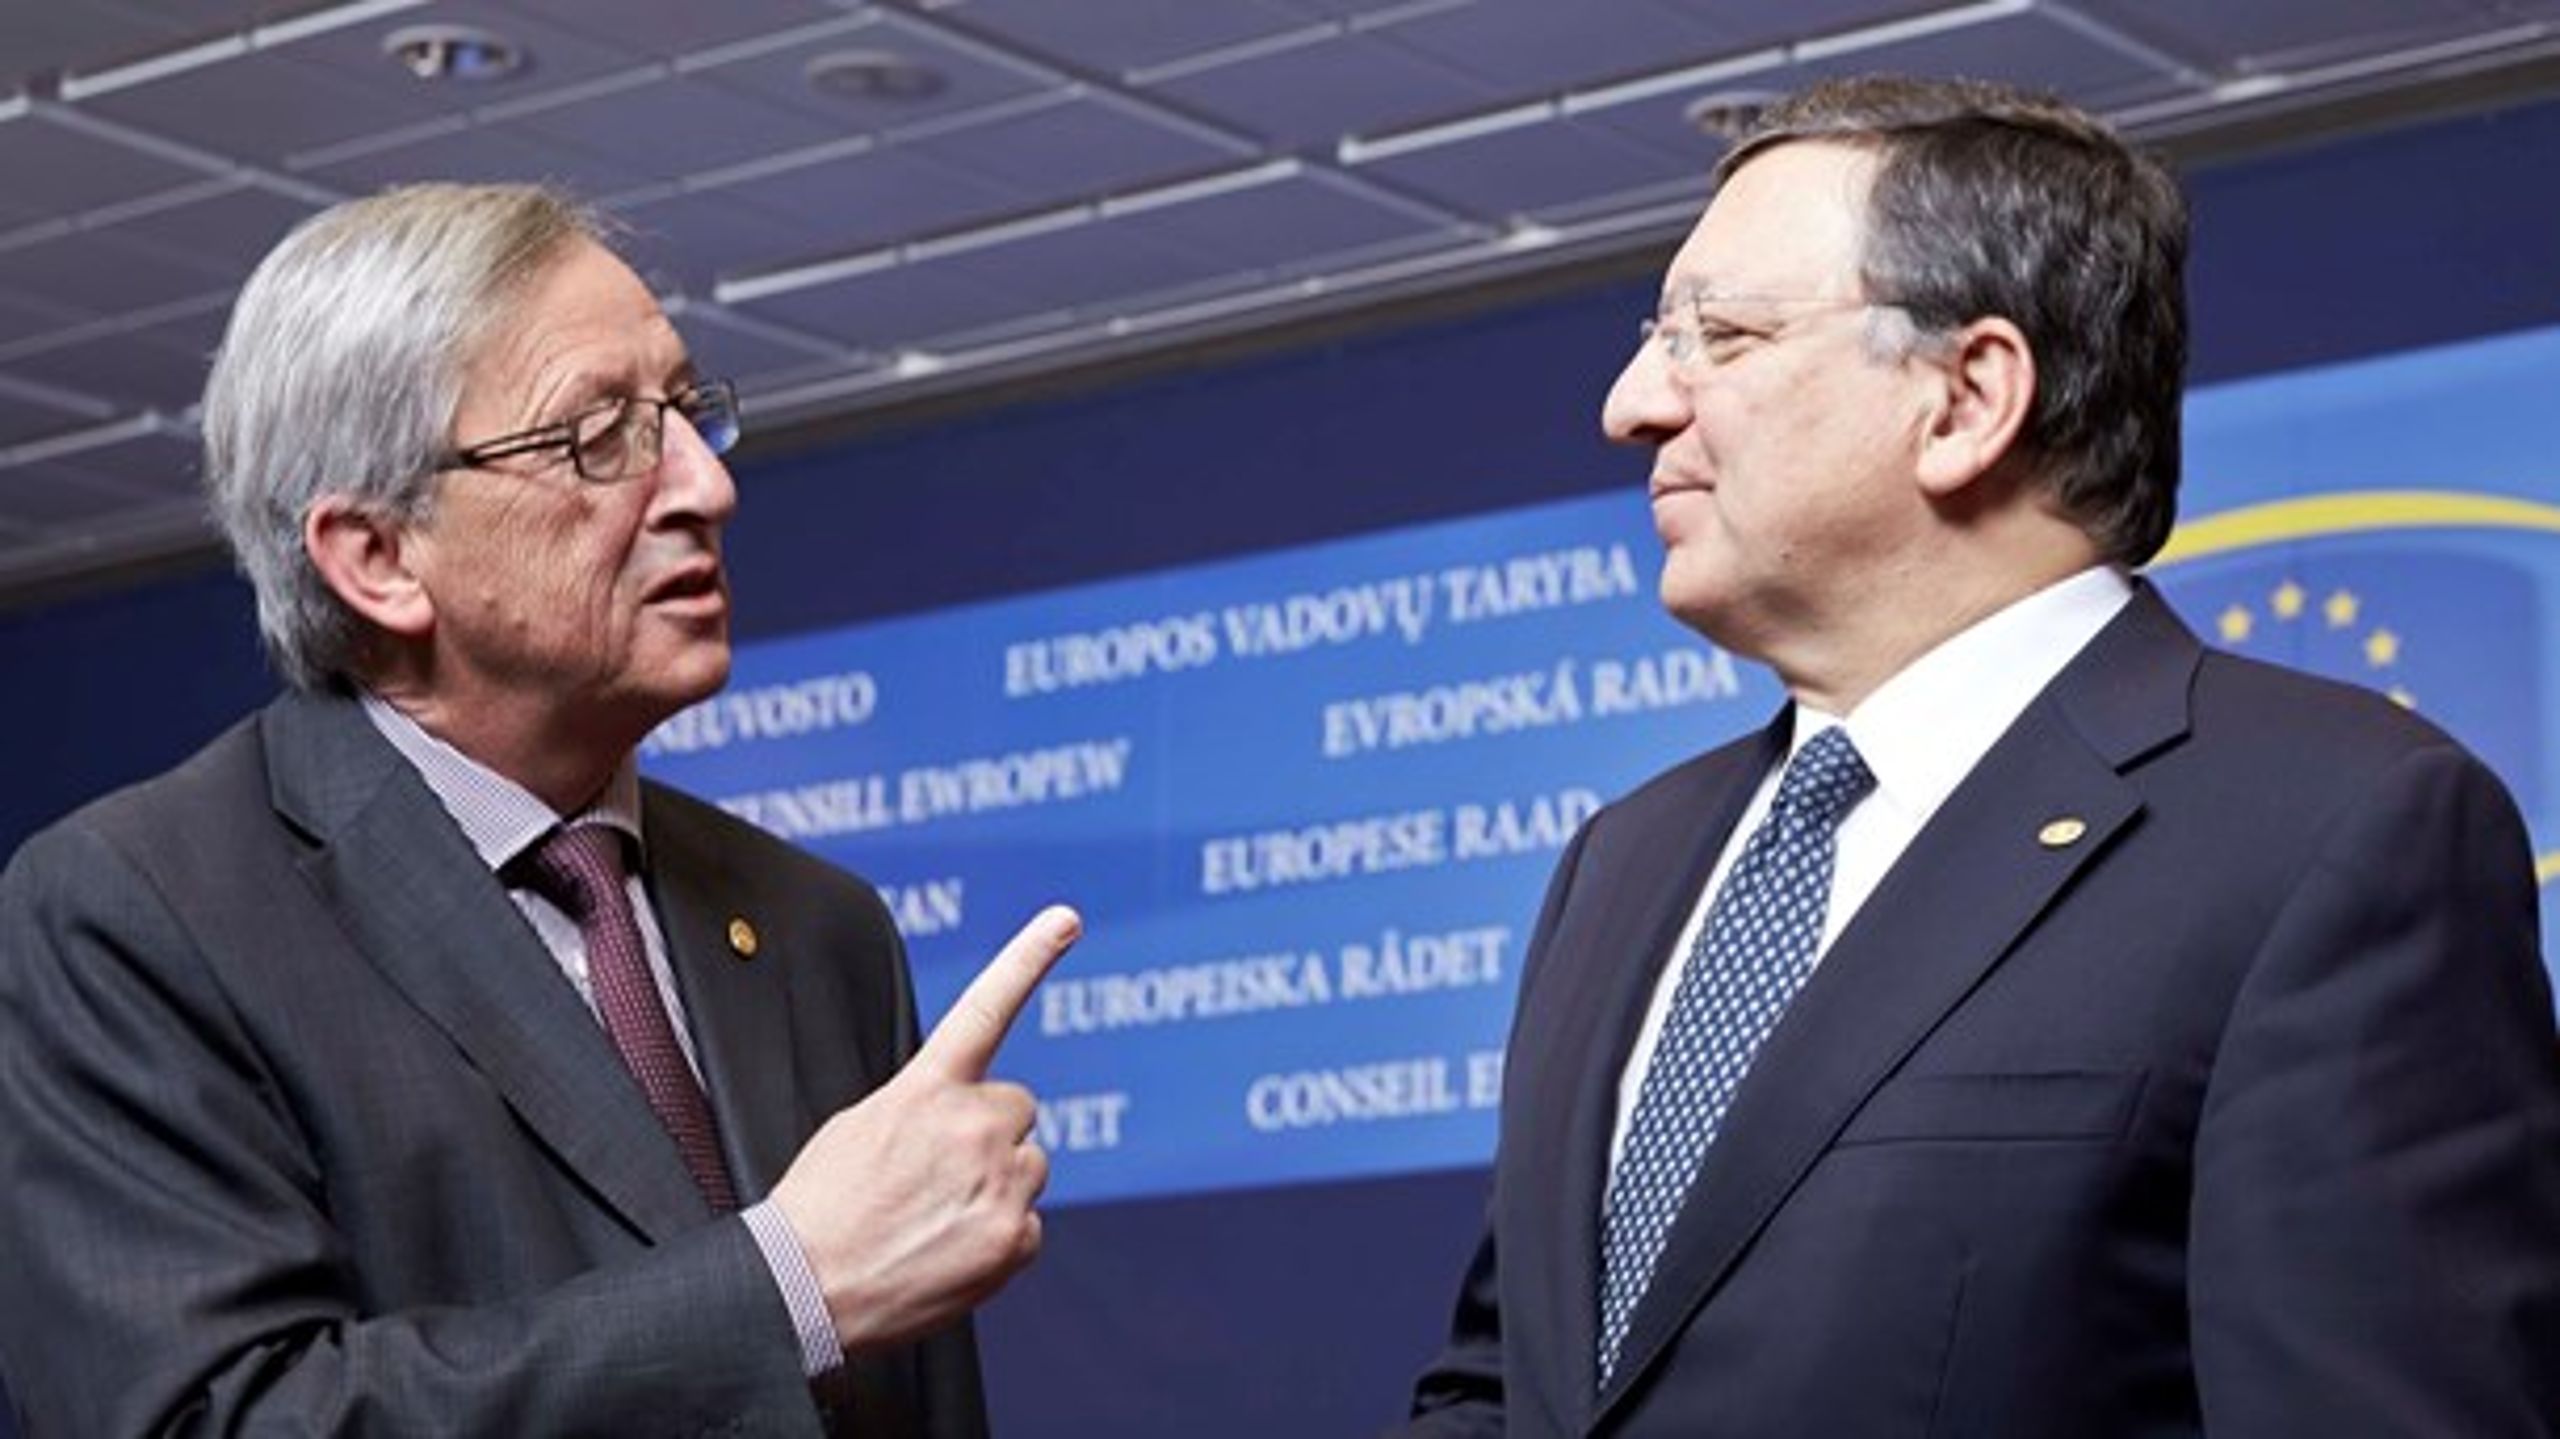 Nuværende kommissionsformand, Jean-Claude Juncker (t.v.), var ikke tilfreds med, at hans forgænger, Jose Manuel Barroso (t.h.), tog et job hos investeringsbanken Goldman Sachs.